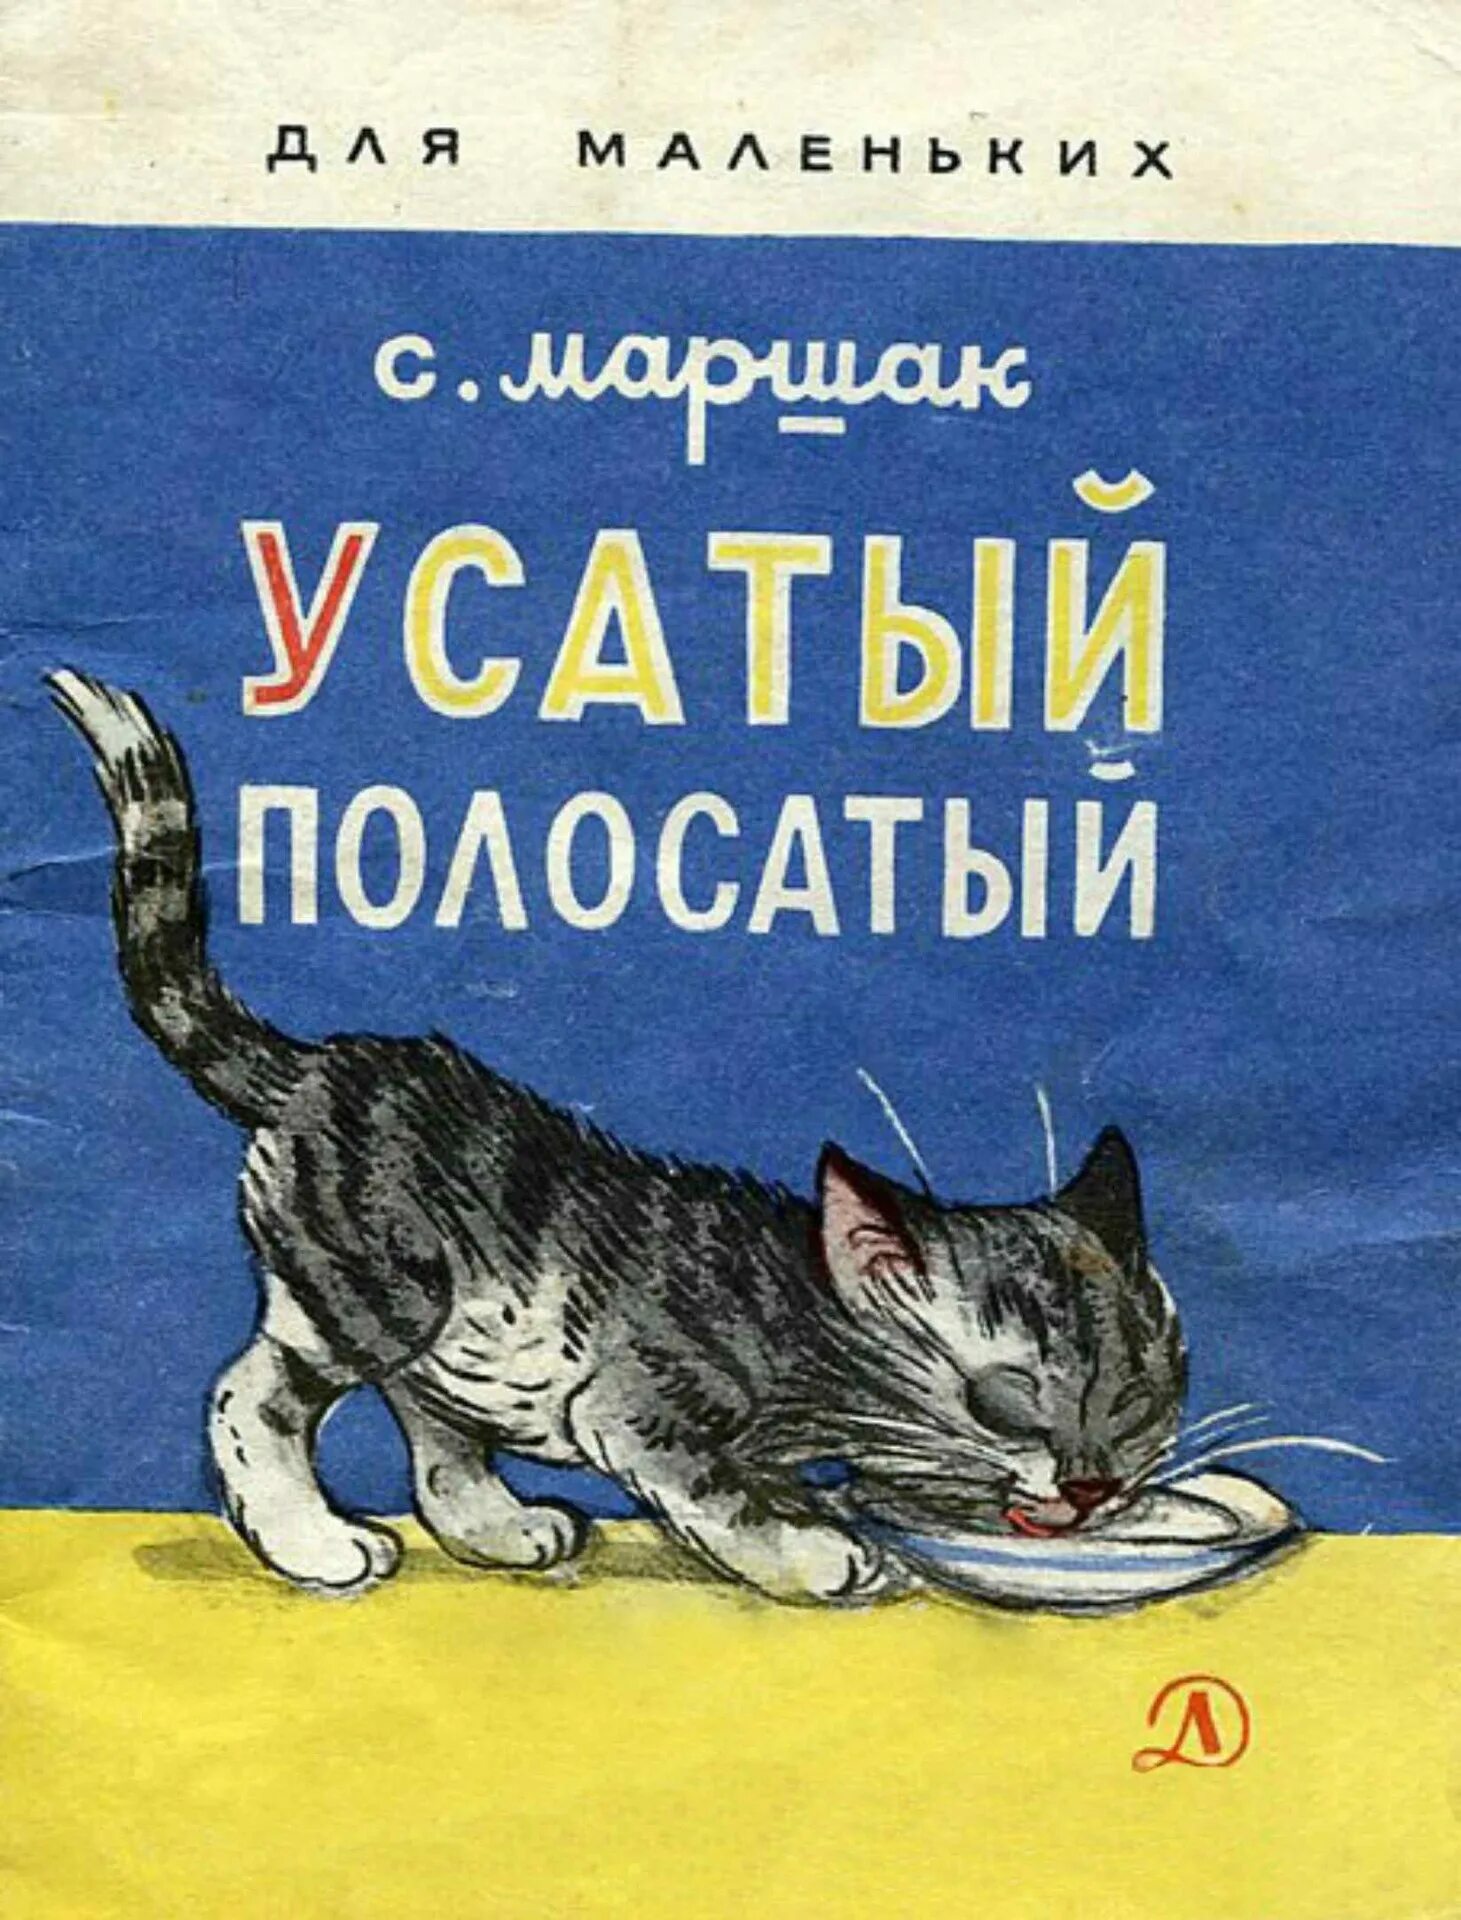 Кошка зовет малышей. Книга для детей Маршак иллюстрации Сутеева. Маршак Усатый полосатый книга.